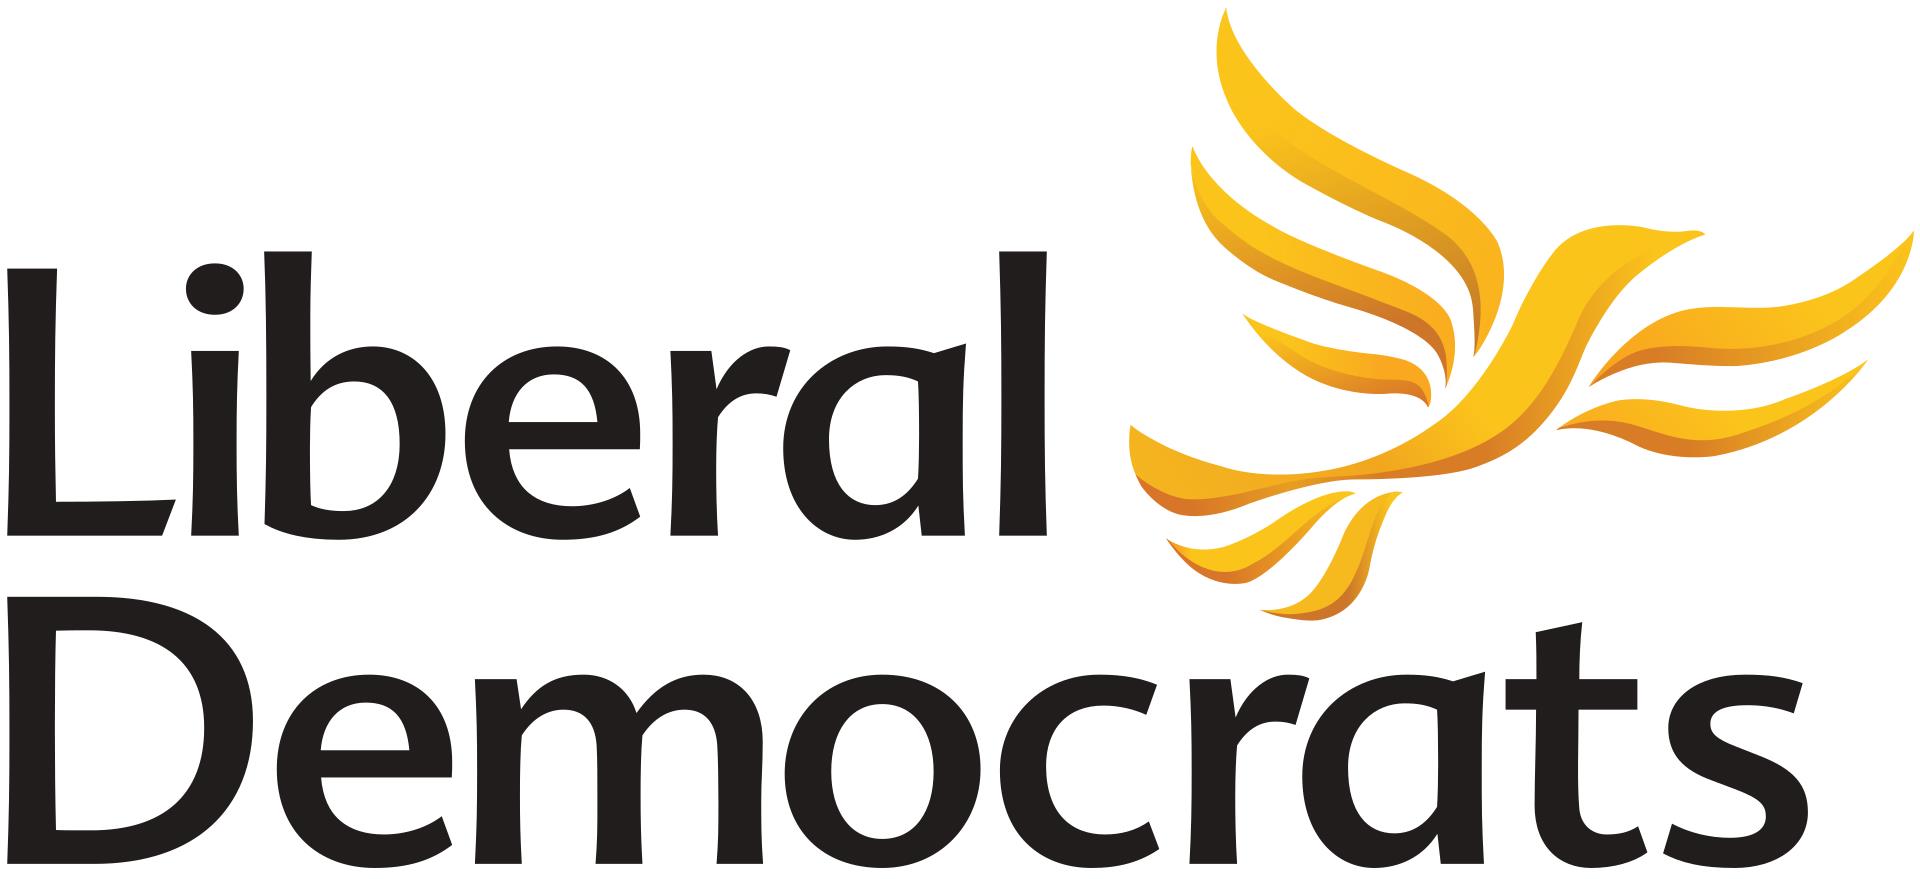 Liberal Democrats (logo)